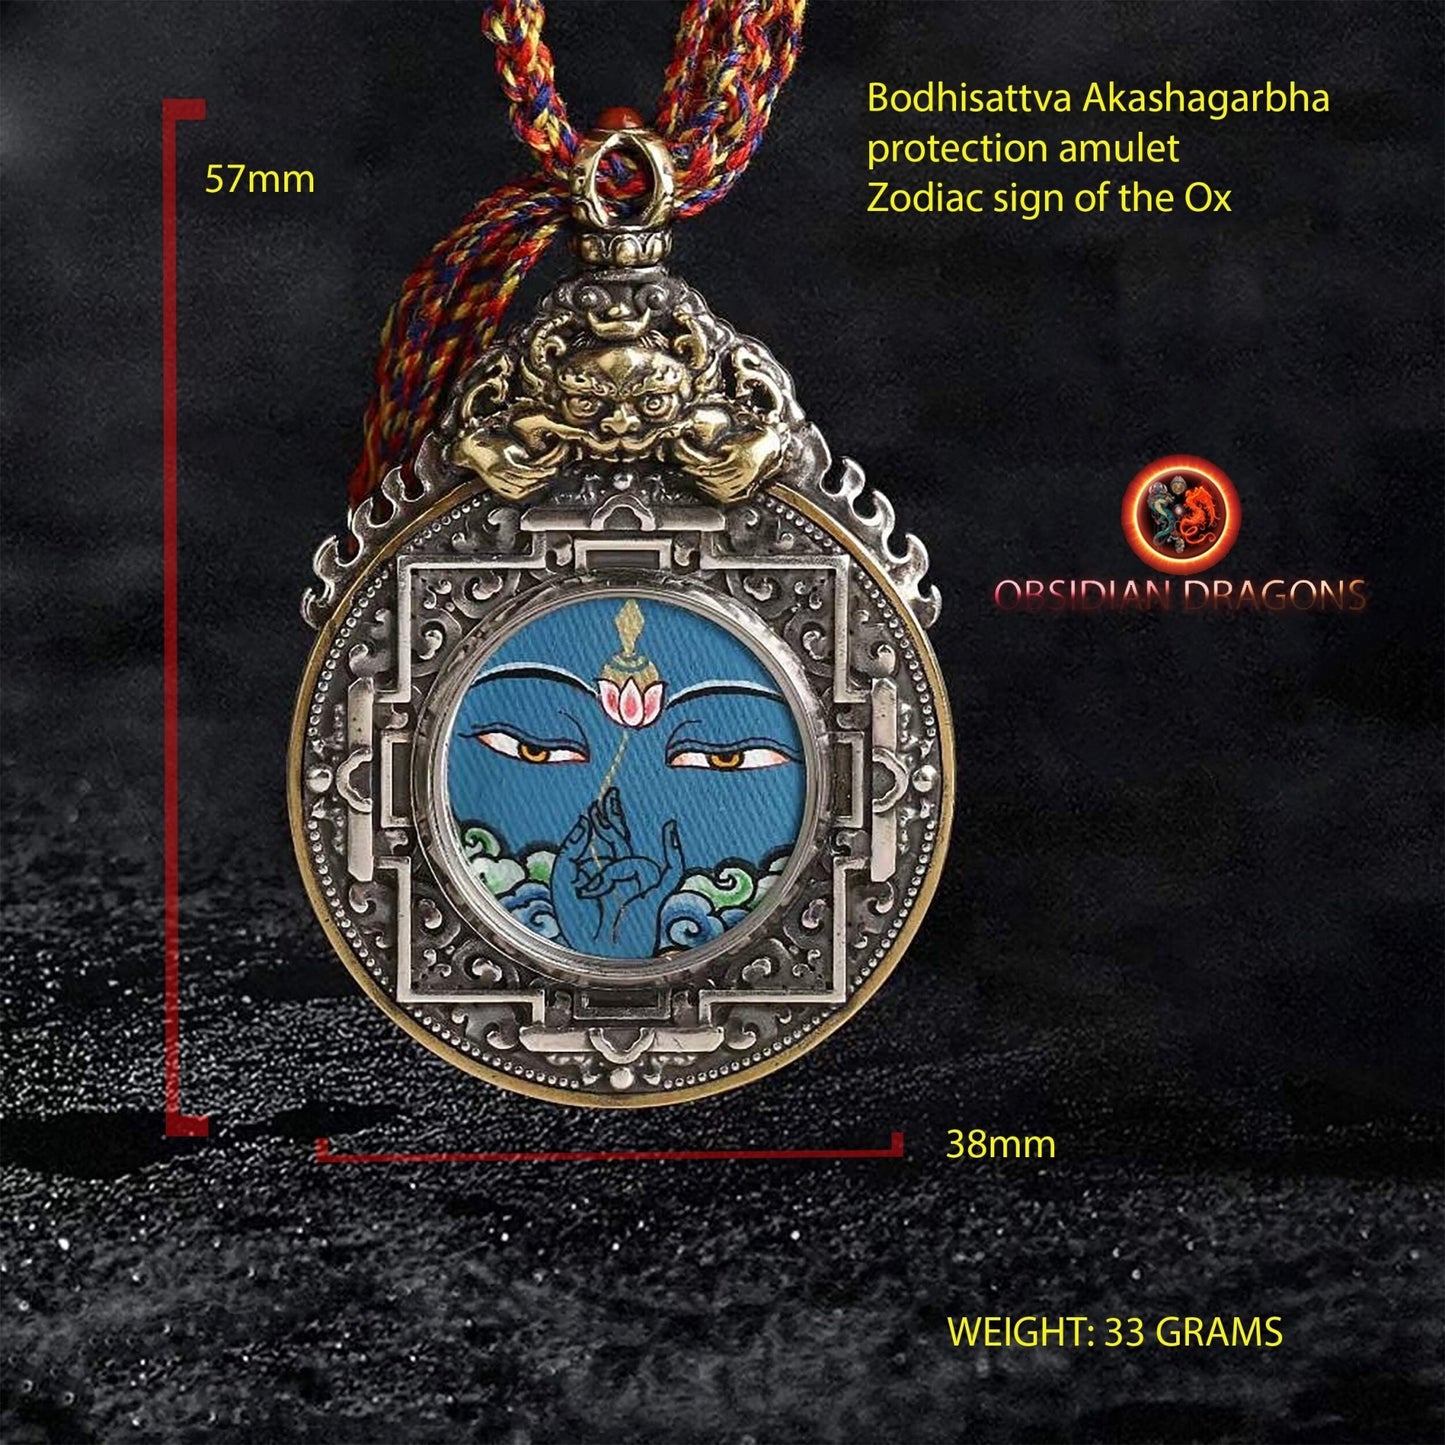 Ghau, amulette pendentif bouddhiste tibetain, bouddha protecteur en fonction de son signe zodiacal, au choix, buffle, cheval, coq ou chien - obsidian dragon